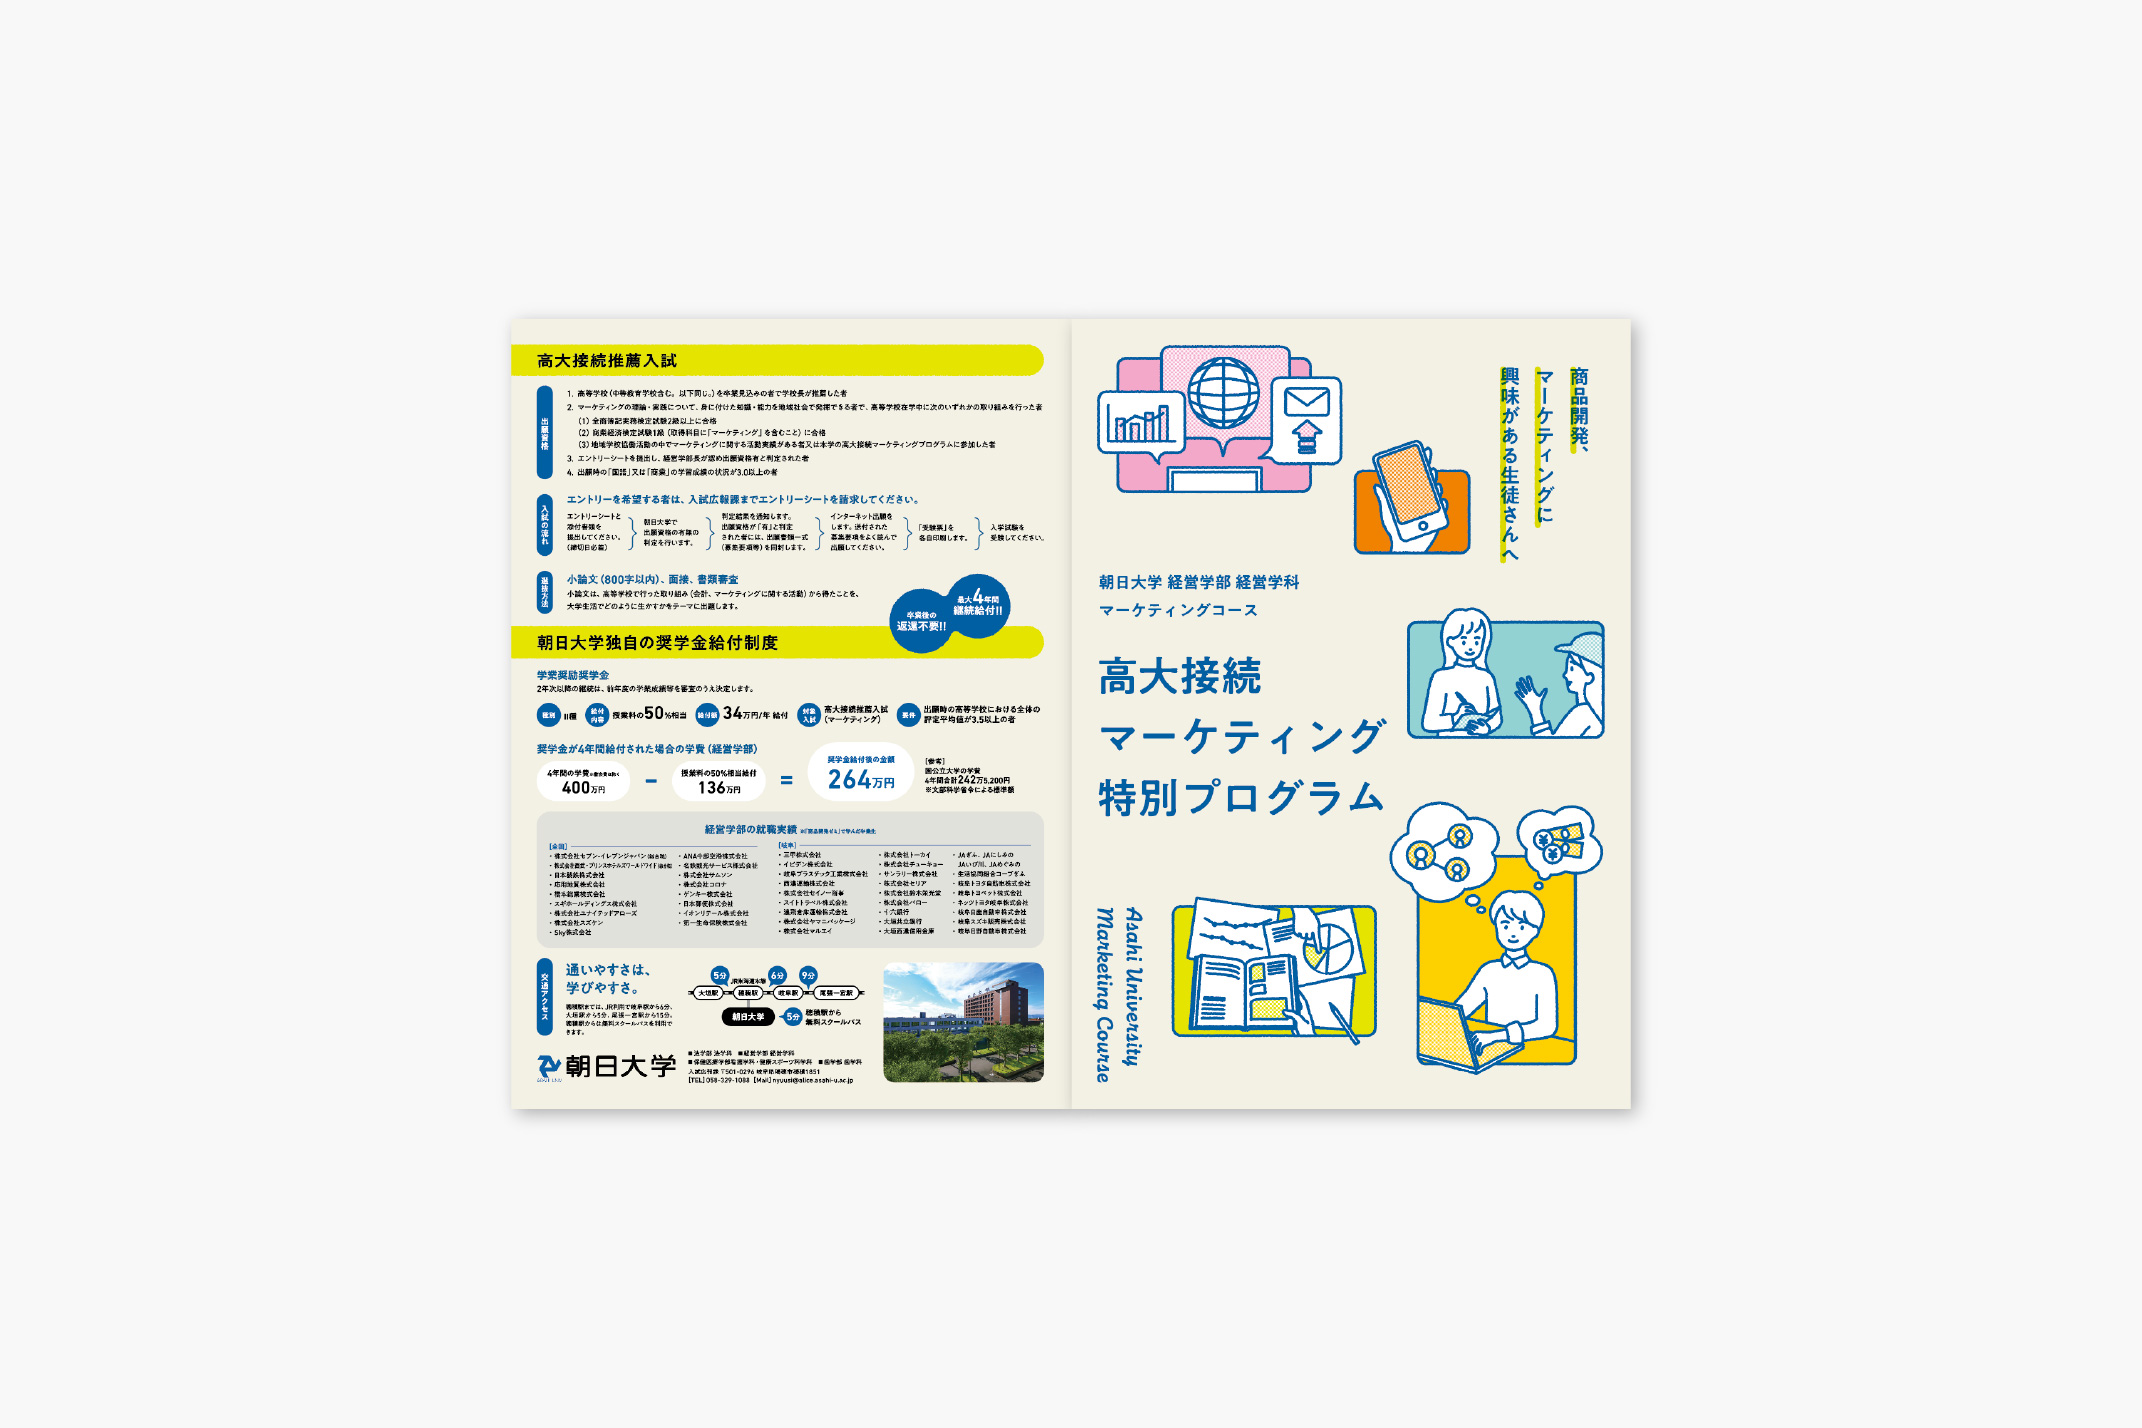 朝日大学 経済学部 経営学科 マーケティングコース / パンフレットの写真です